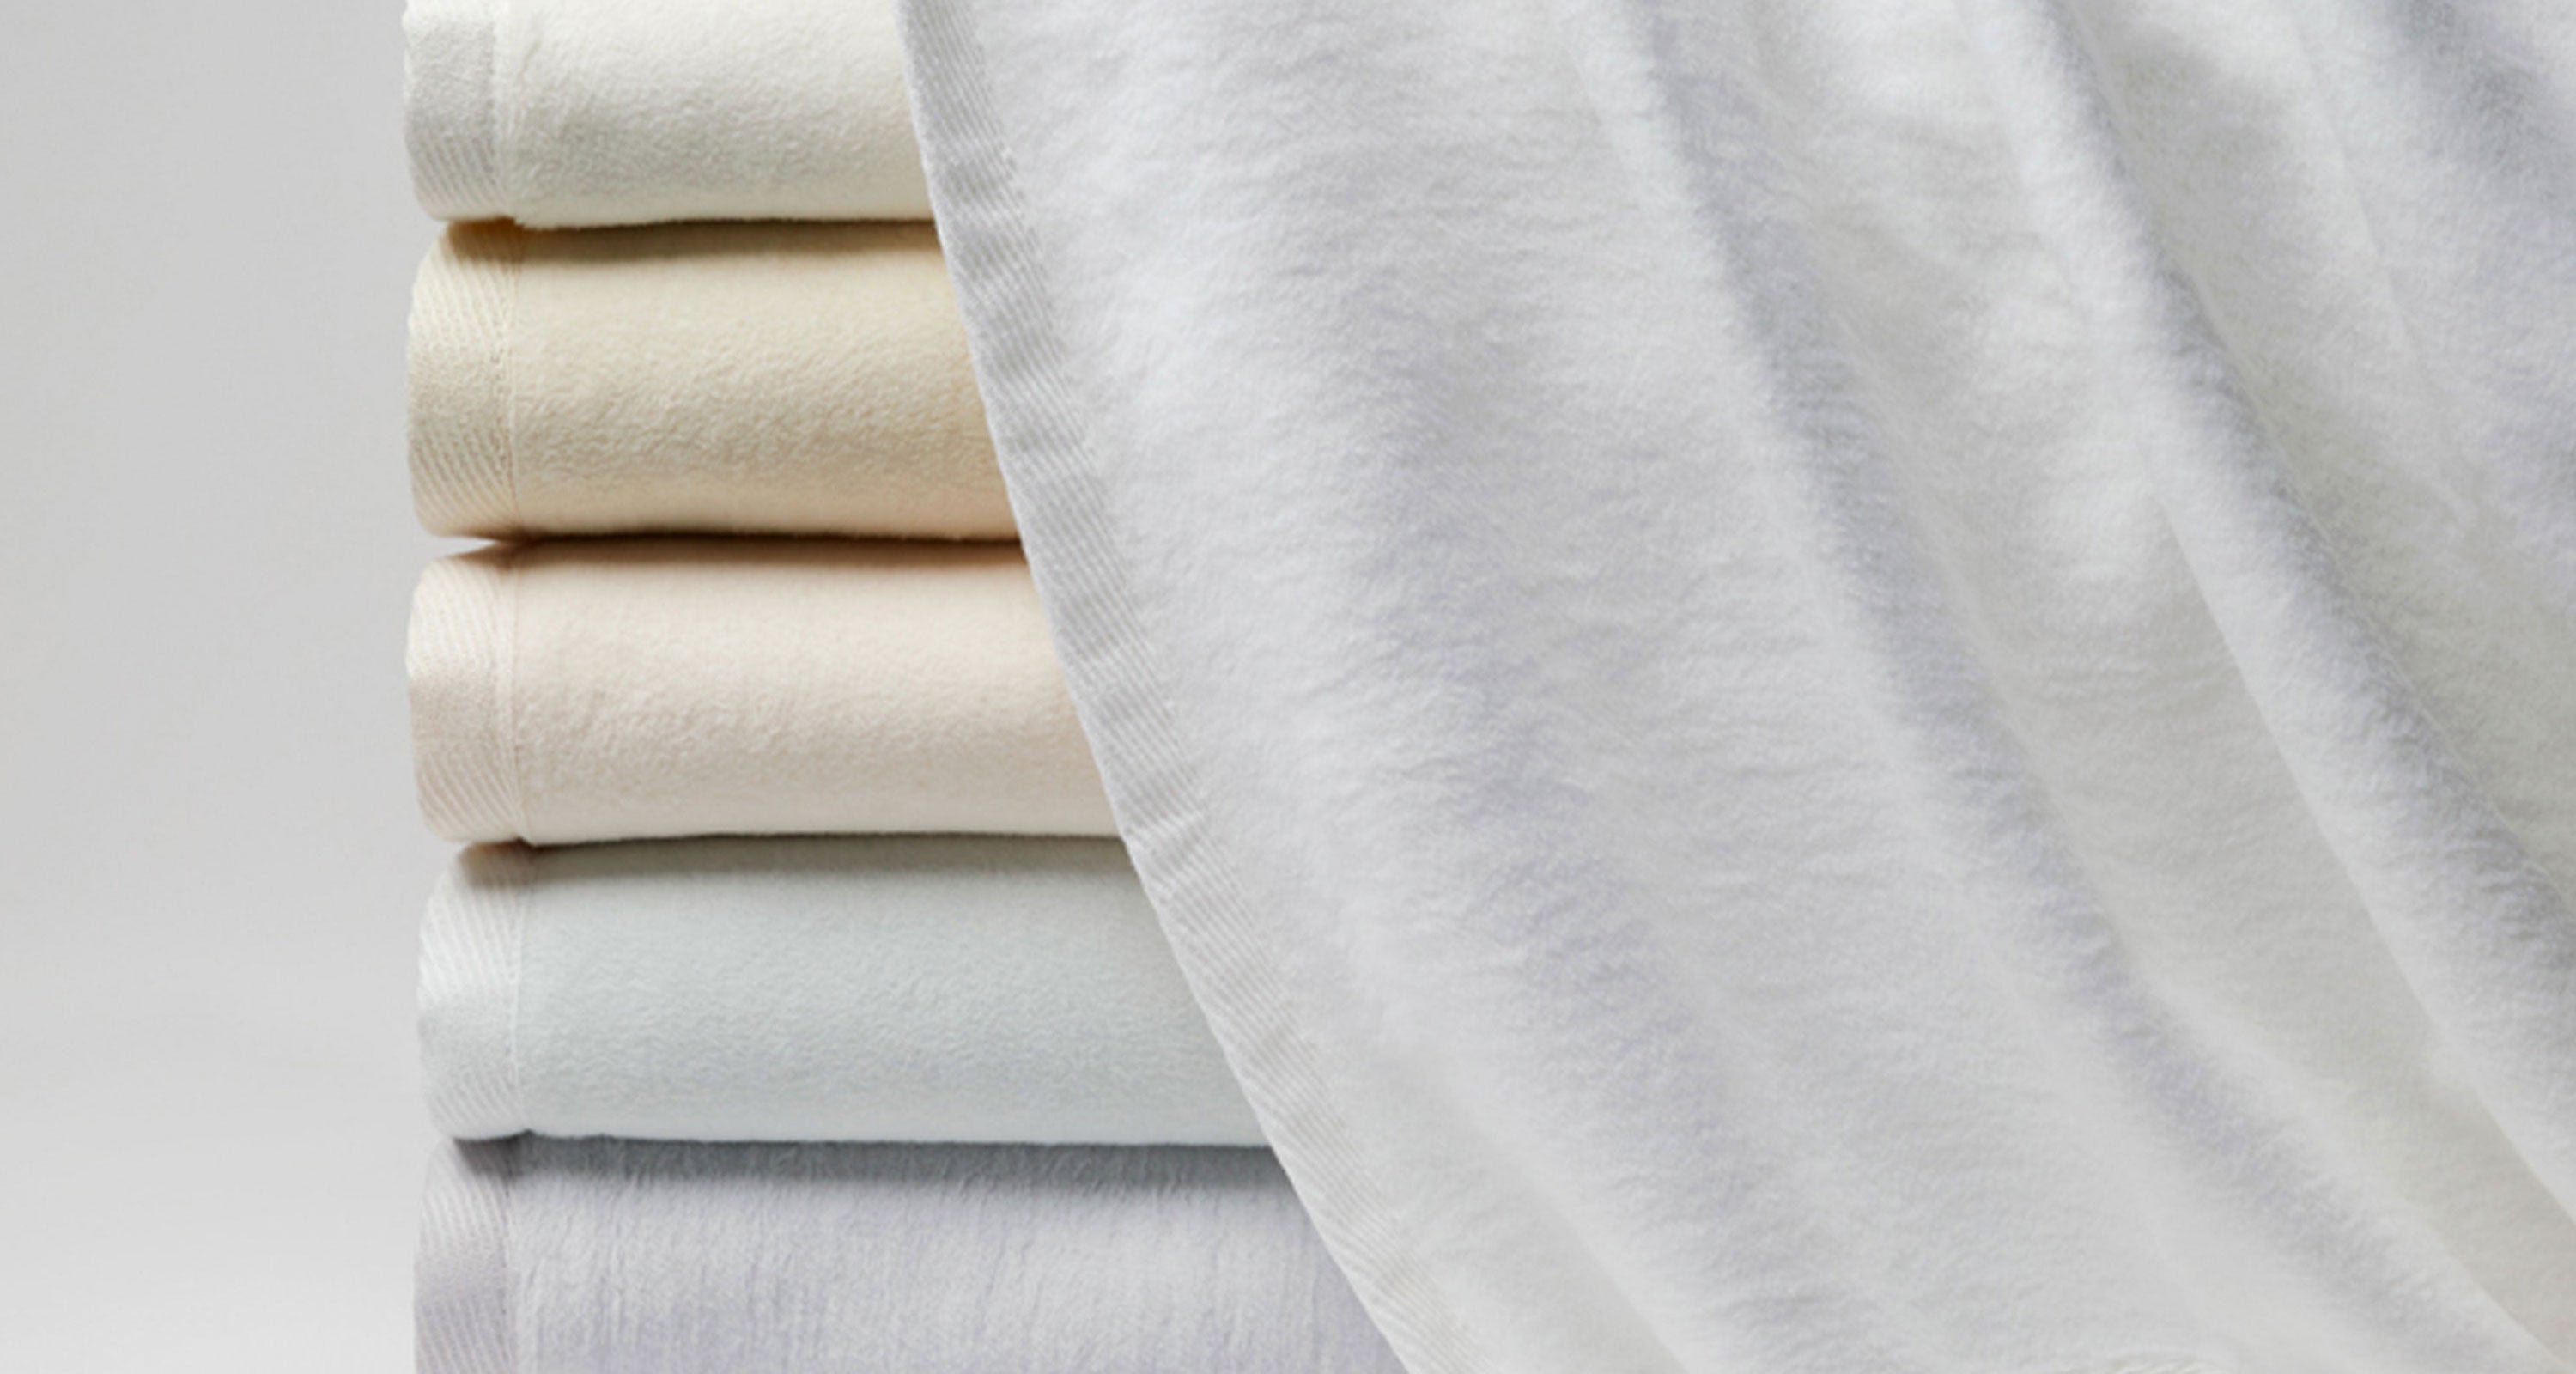 Luxury Cotton Blankets